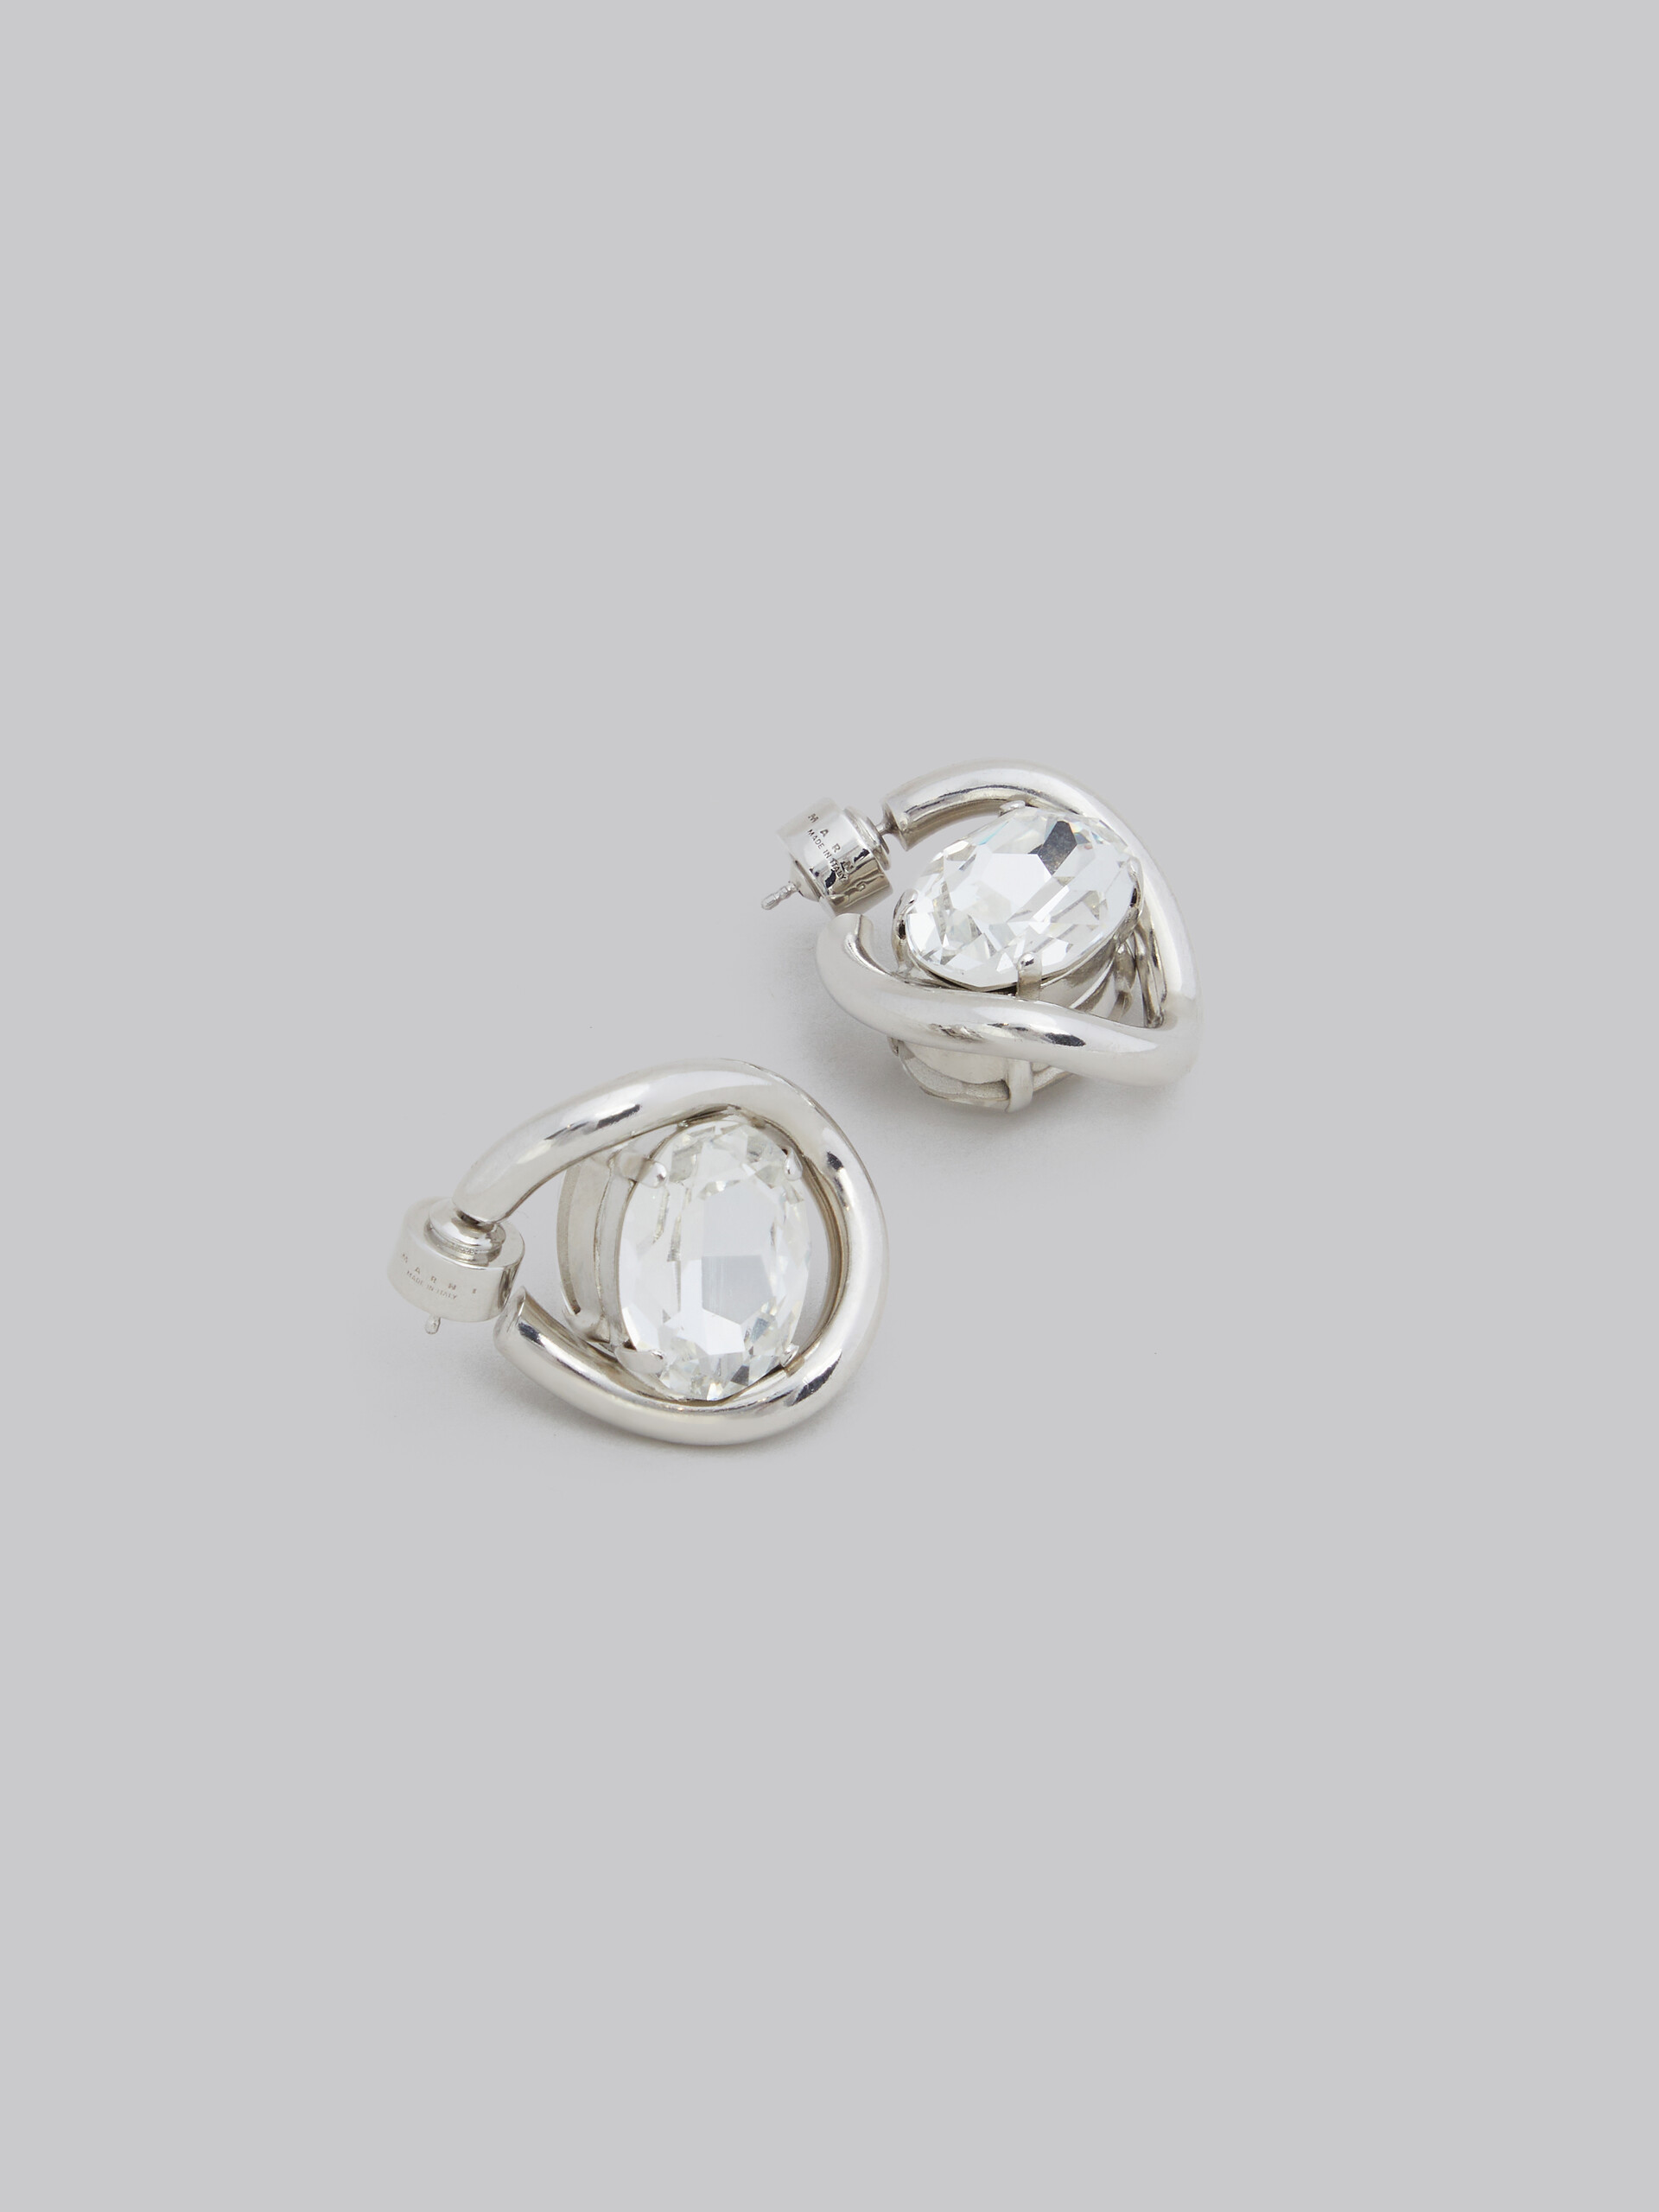 Twisted hoop earrings with rhinestone details - Earrings - Image 4